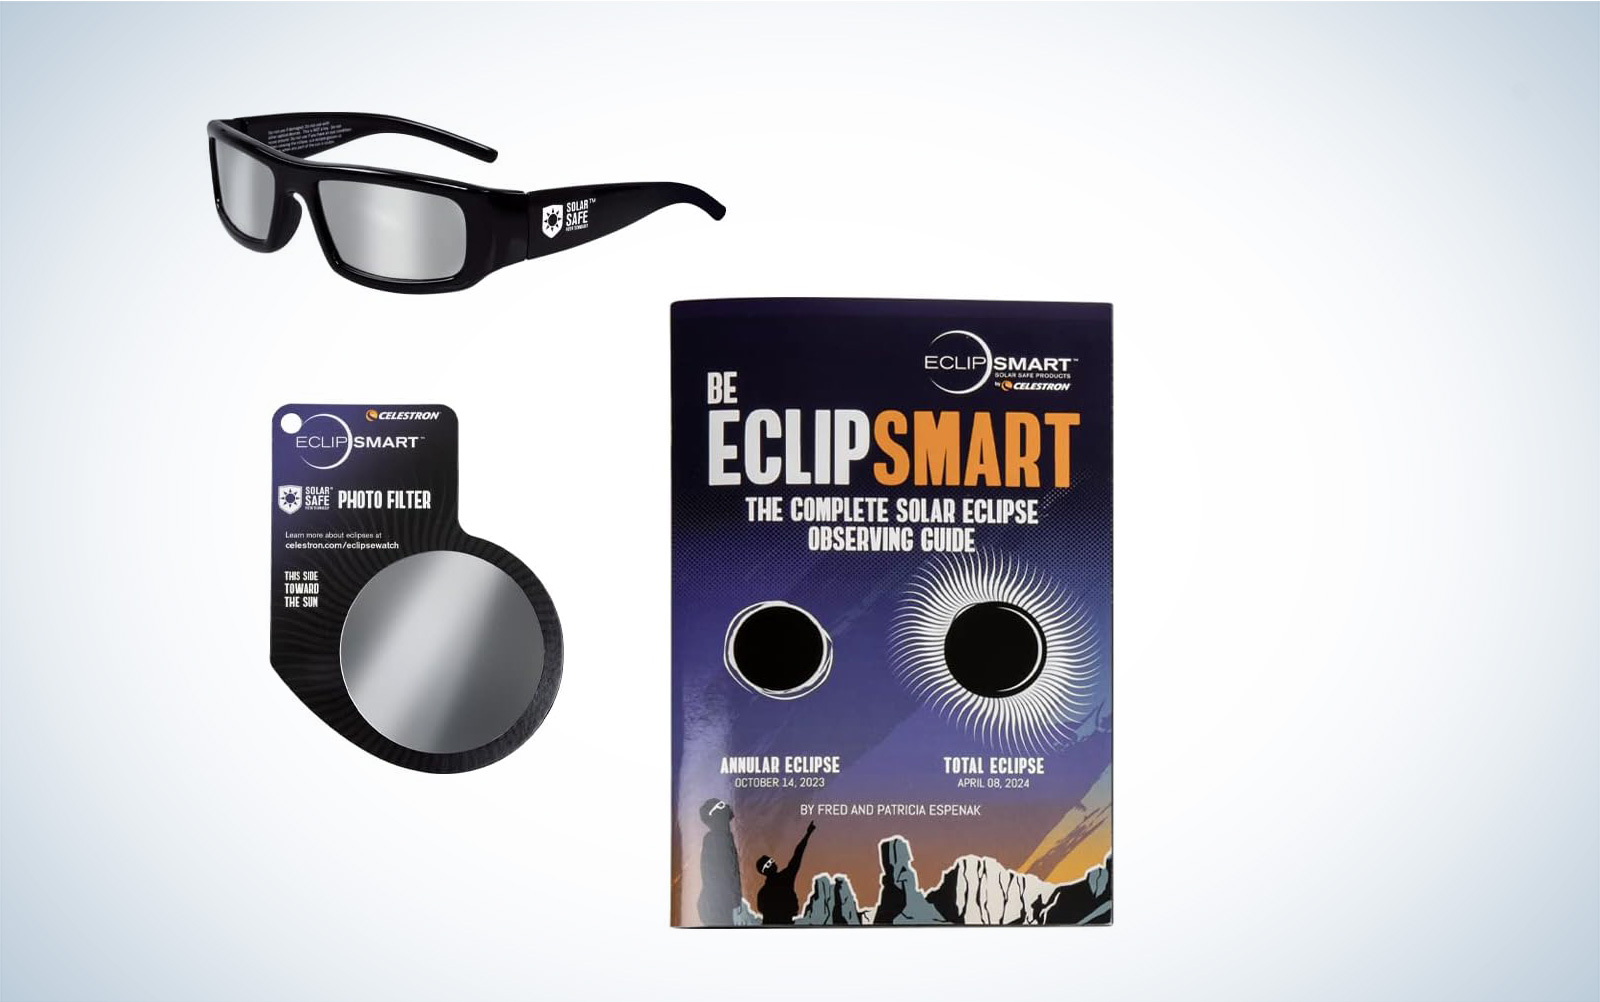 Kit di visualizzazione Celestron Eclipse che include un paio di occhiali di fascia alta, un filtro fotografico e una guida per la visualizzazione